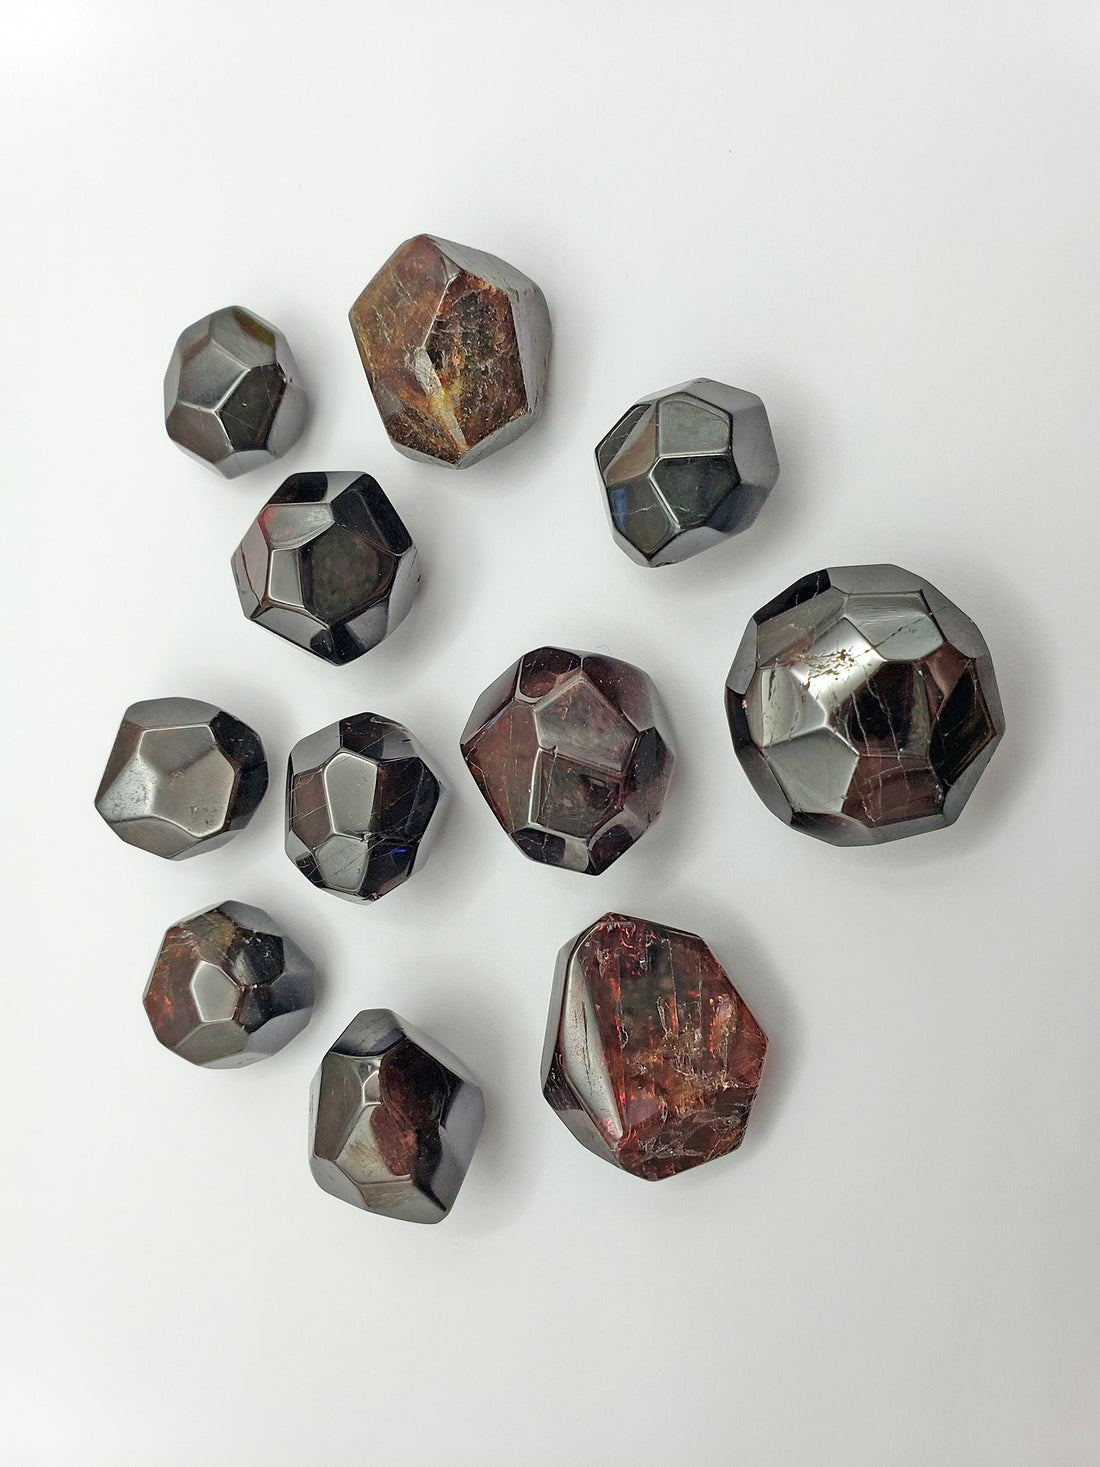 Red Garnet Crystal / Garnet Dodecahedron / Red Garnet / Polished Garnet / Garnet  Crystal / Tumbled Garnet / Garnet Specimen / Garnet Stone 